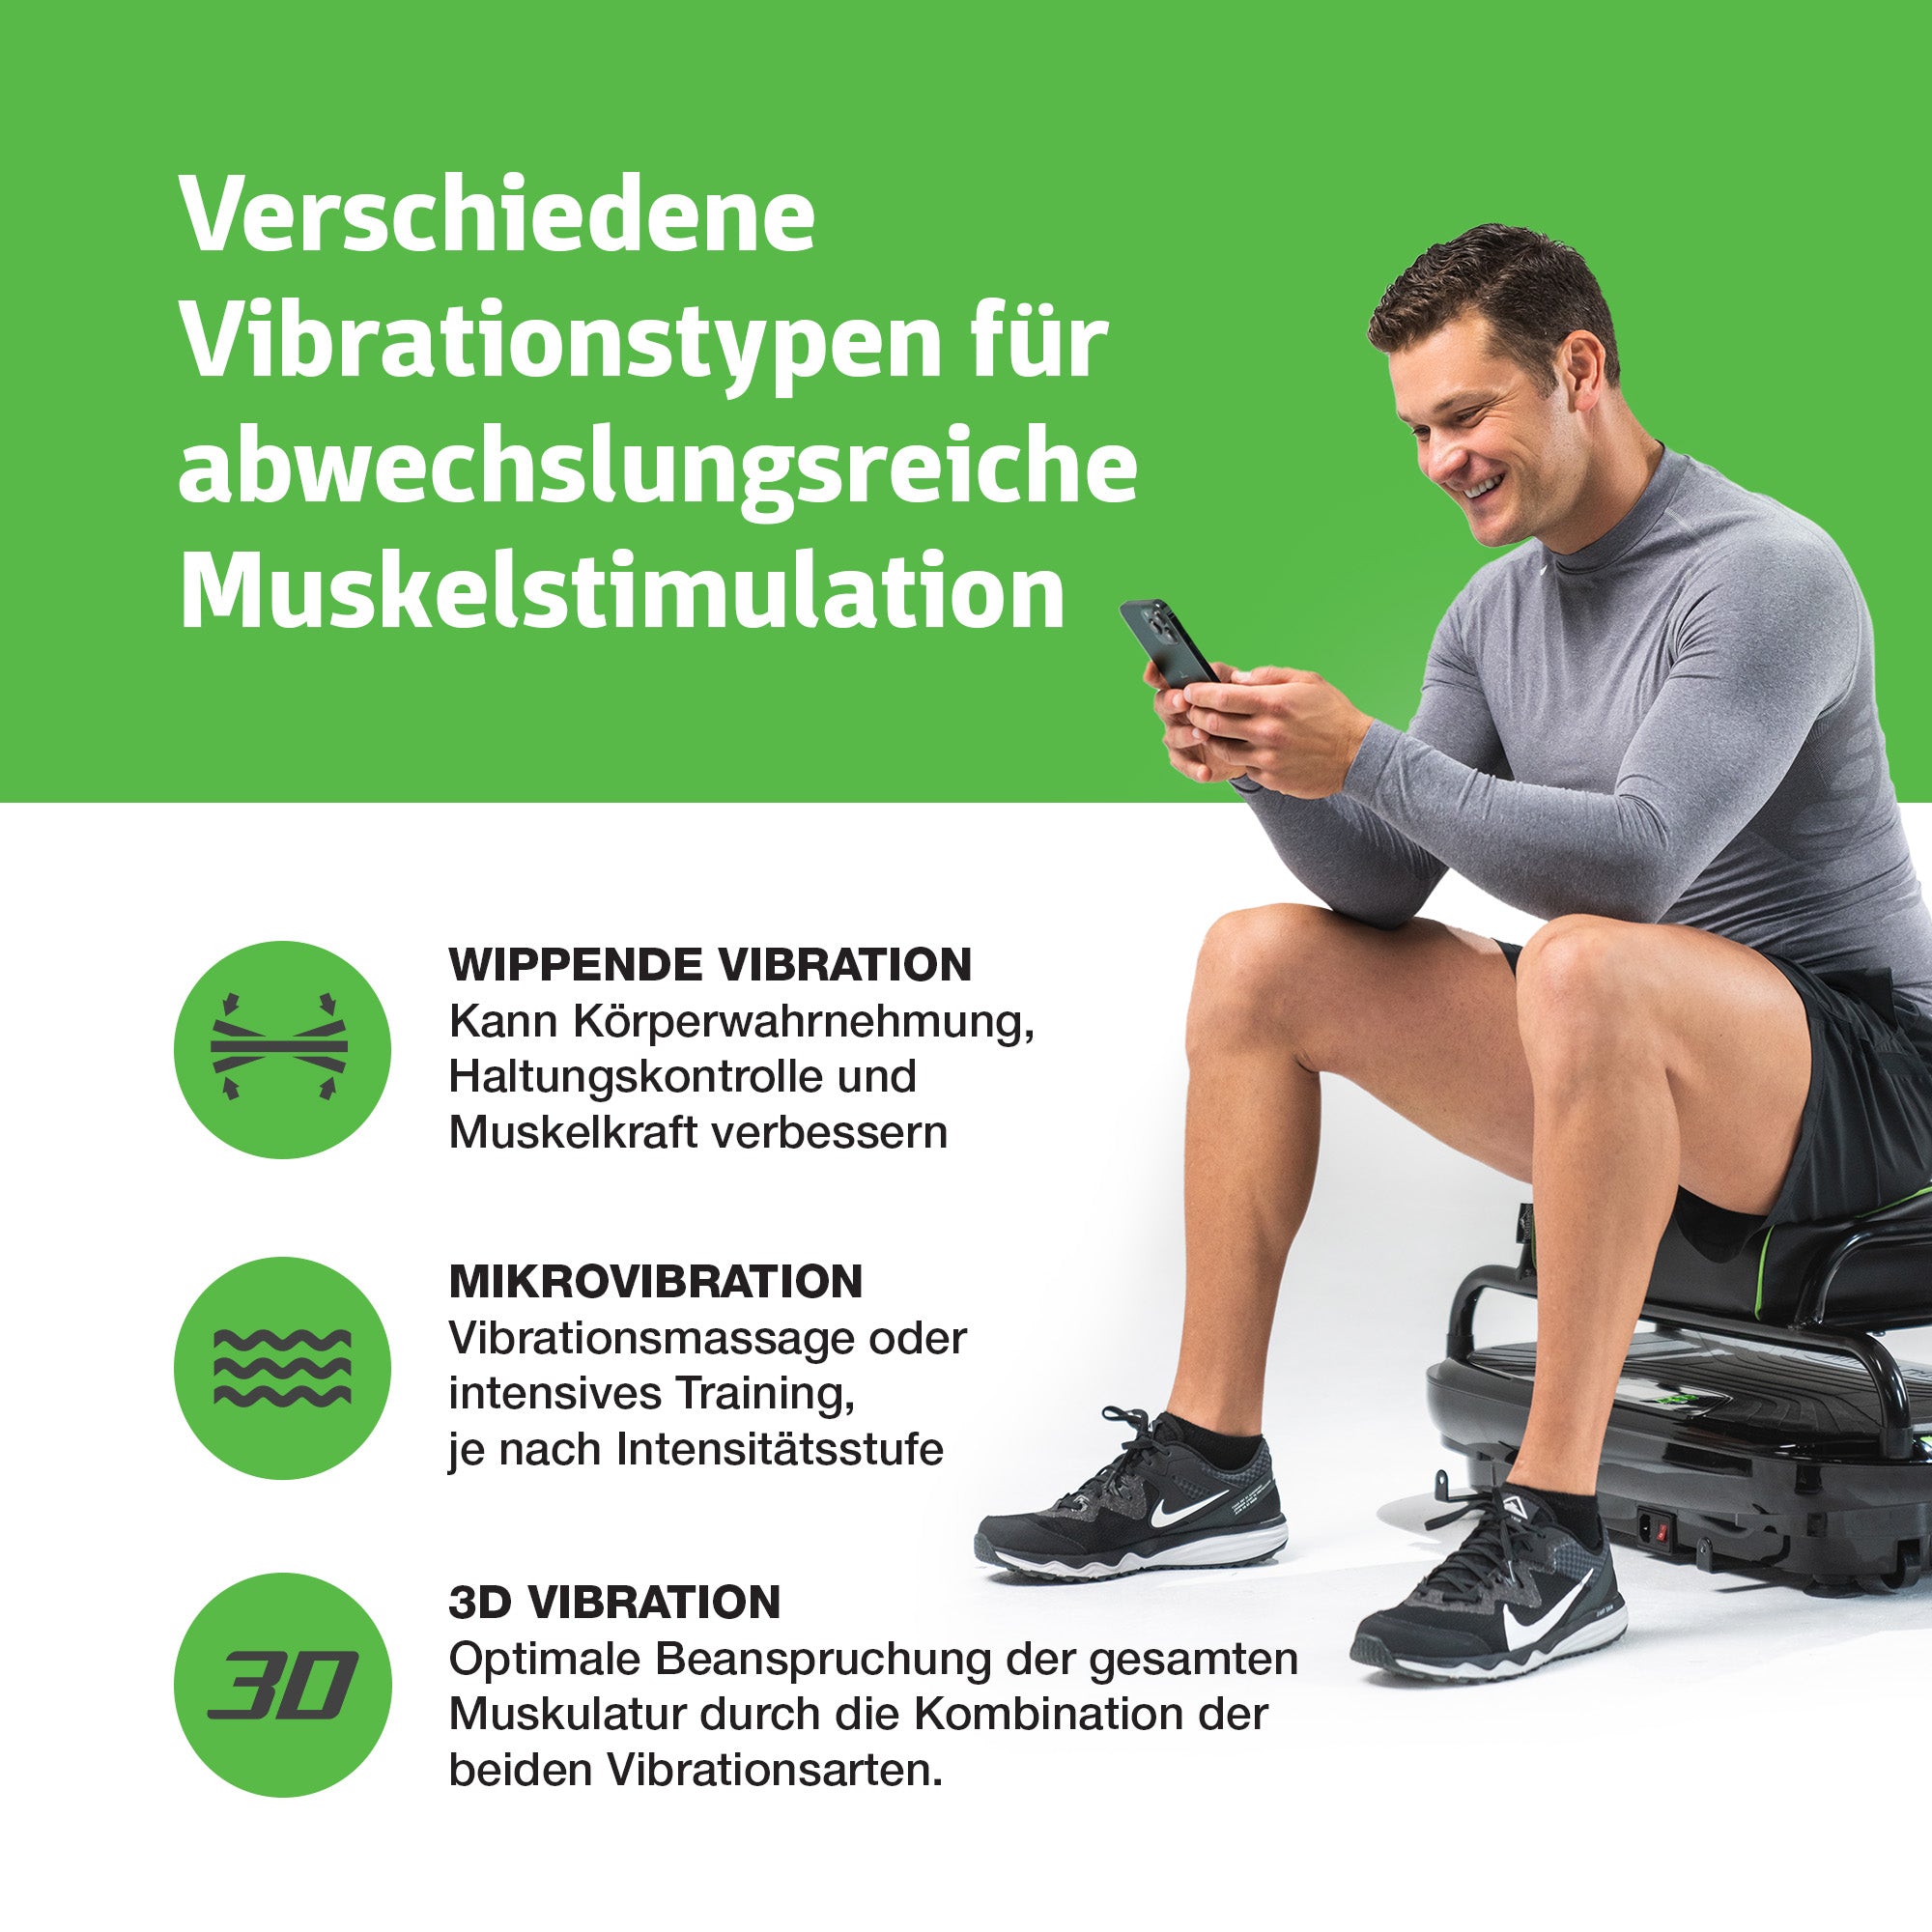 Verschiedene Vibrationstypen der Vibrationsplatte Sport für abwechslungsreiche Muskelstimulation: wippende Vibration, Mikrovibration und 3D Vibration